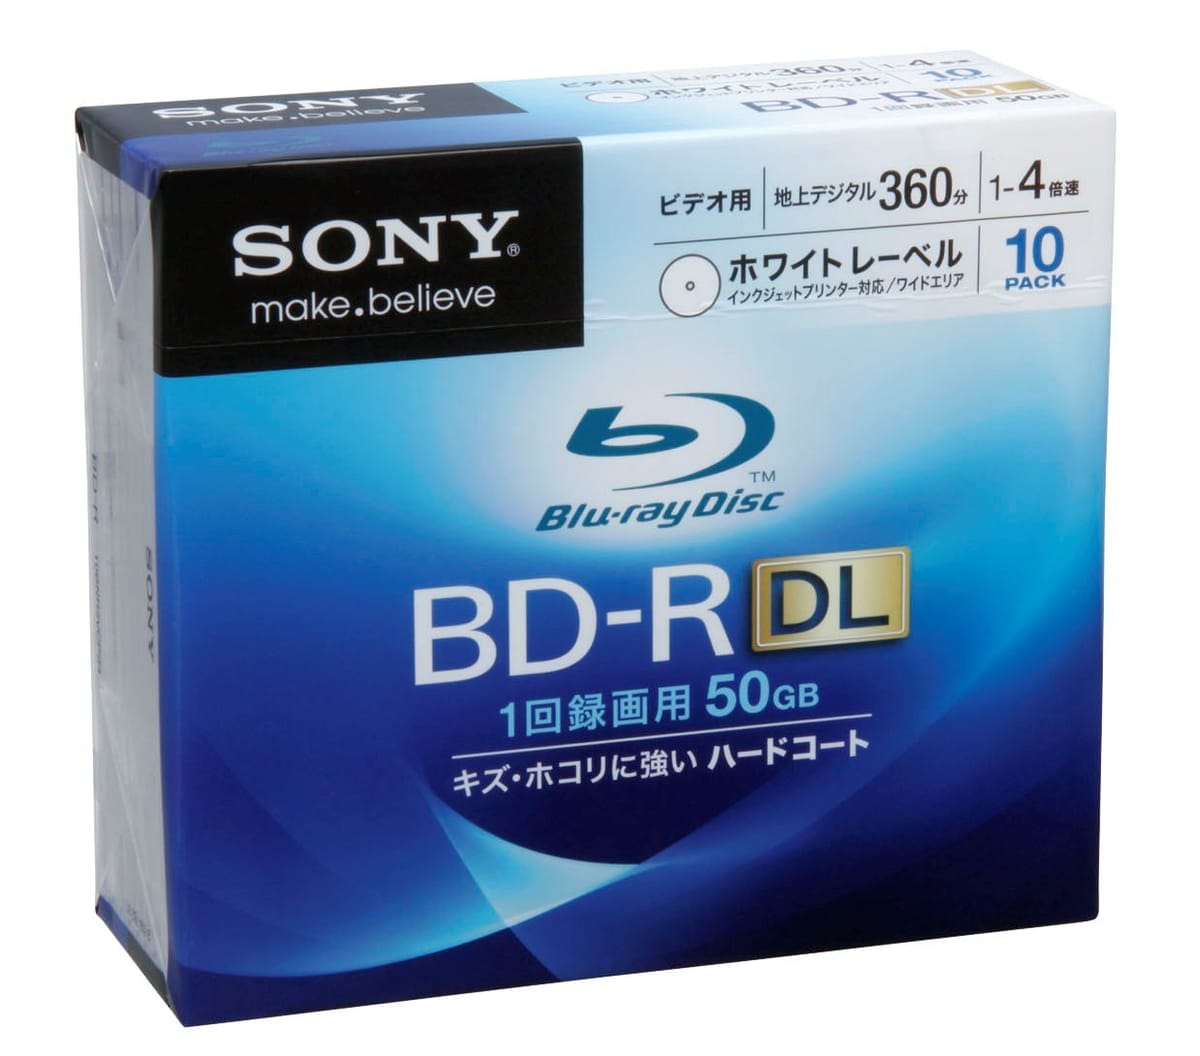 SONY 日本製 ビデオ用BD-R 追記型 片面2層50GB 4倍速 ホワイトプリンタブル 10枚パック 10BNR2VCPS4